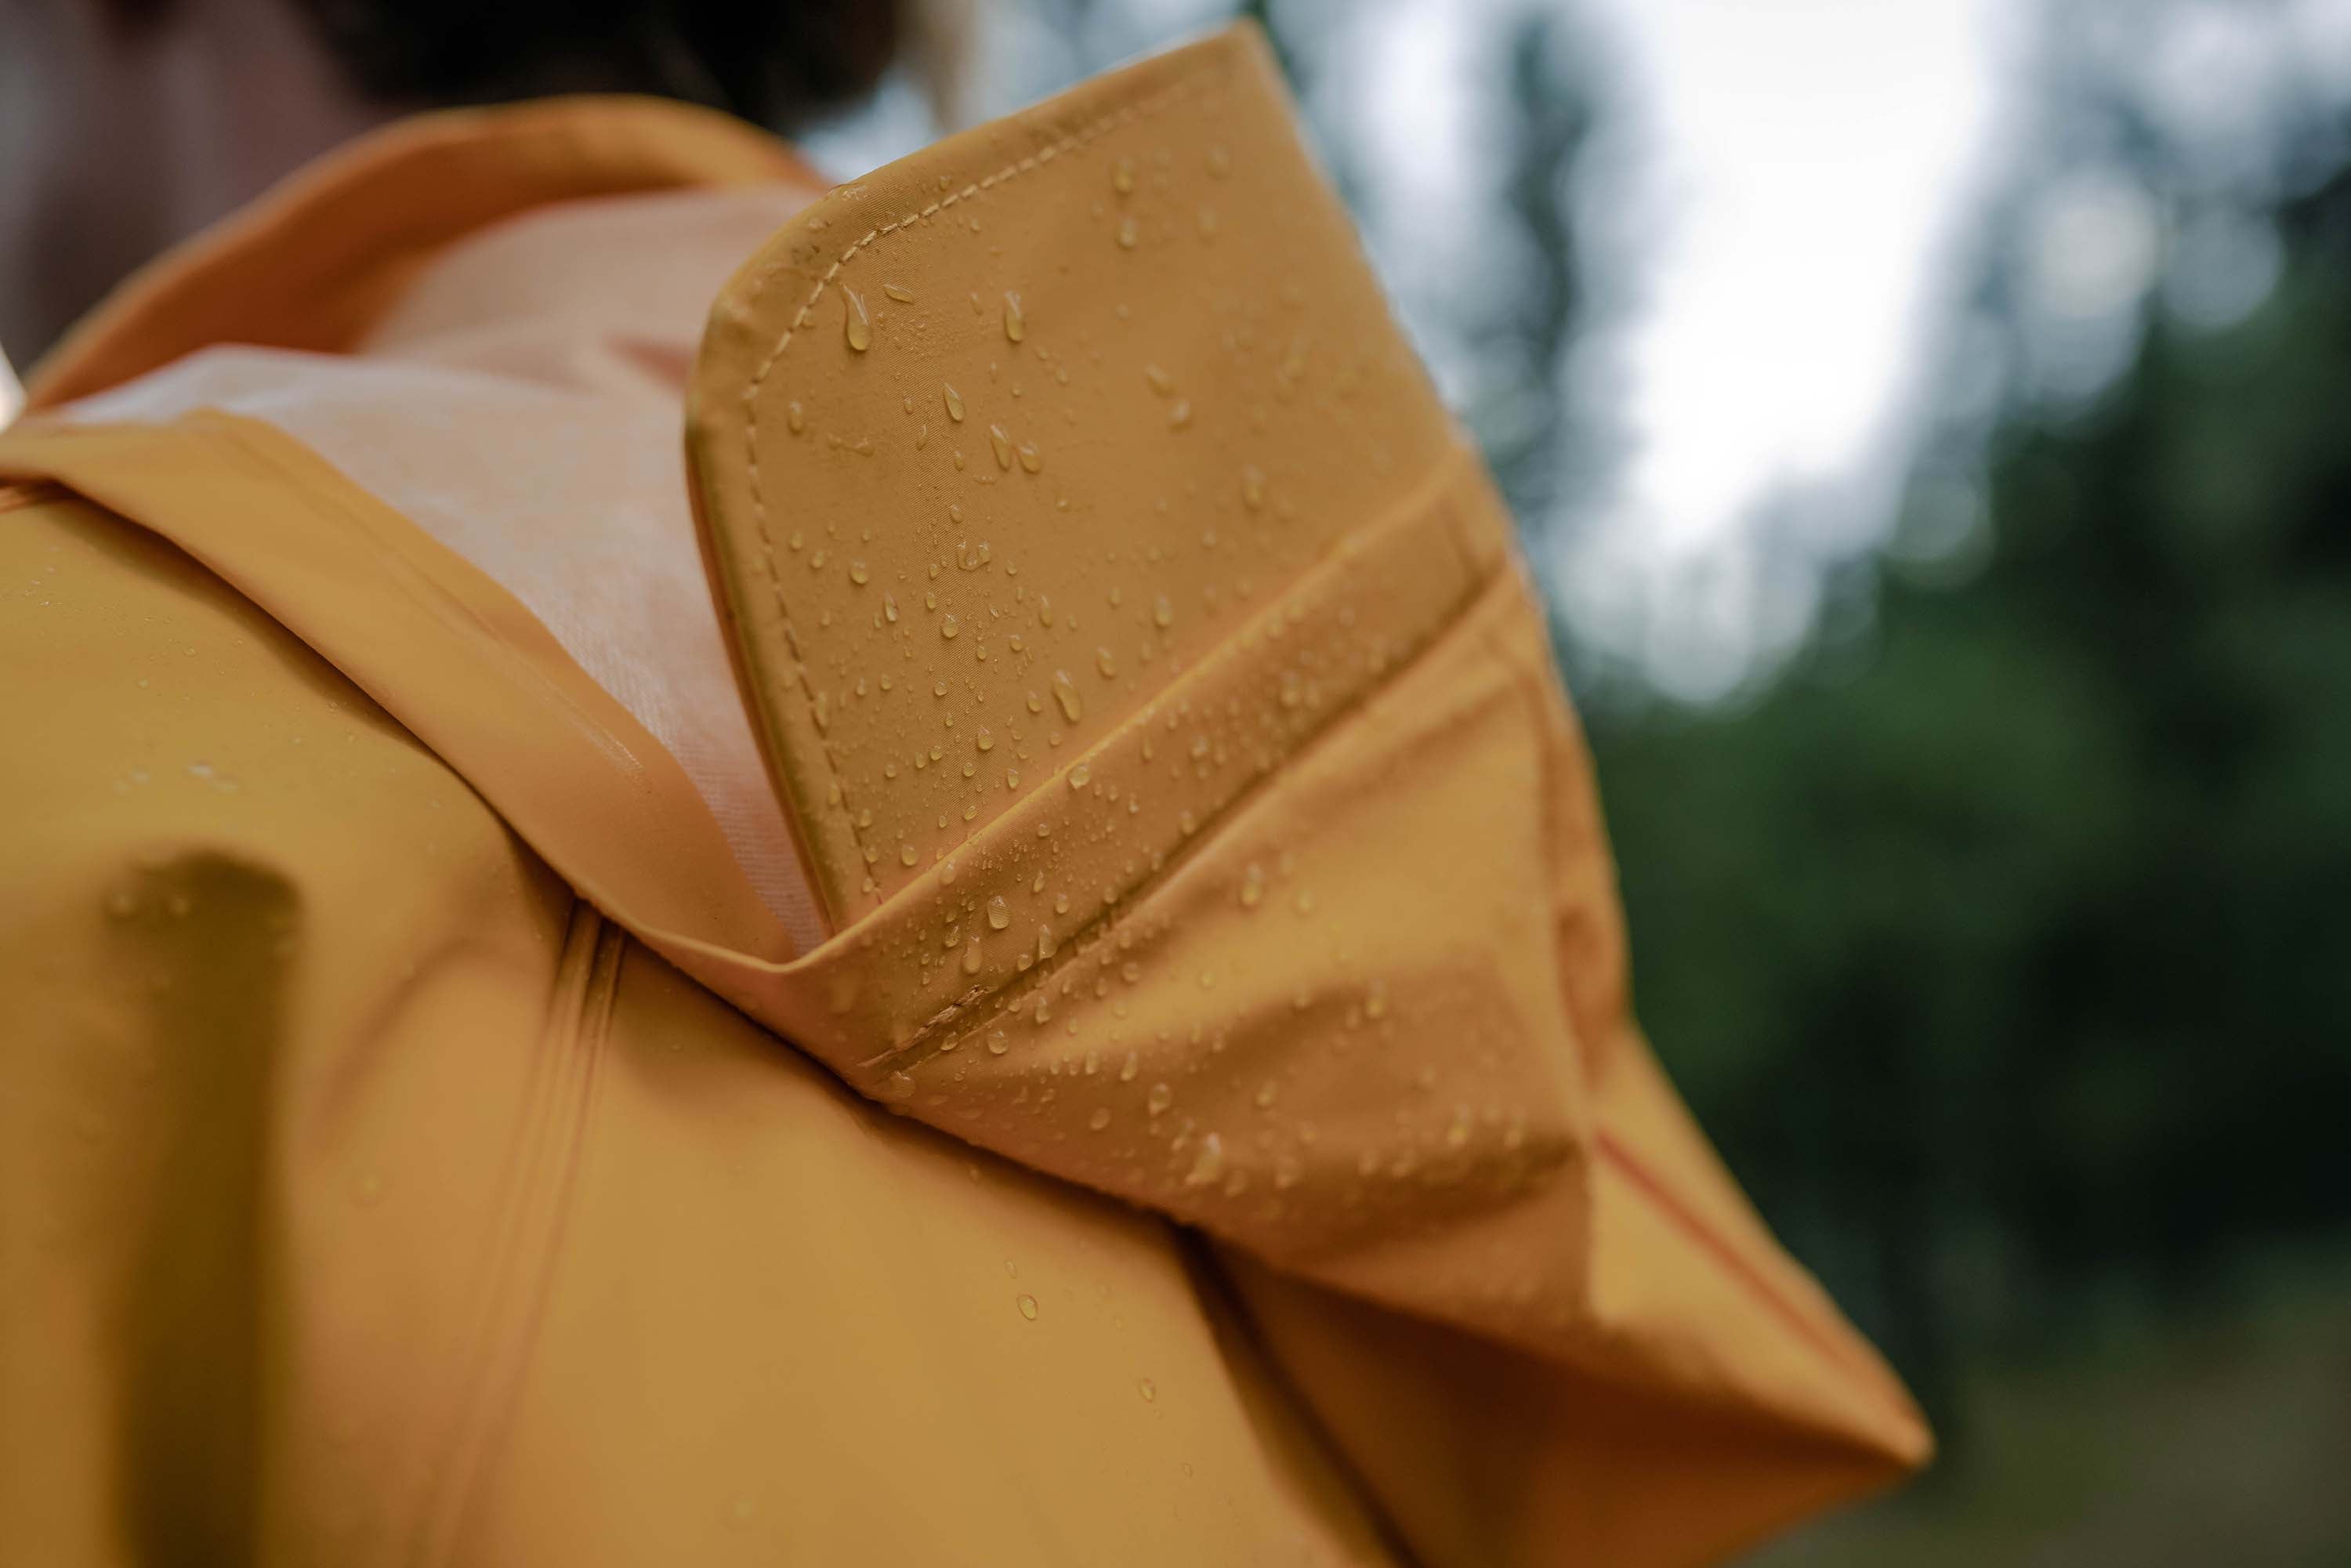 Commercial Rainsuit - Yellow - 4Xl